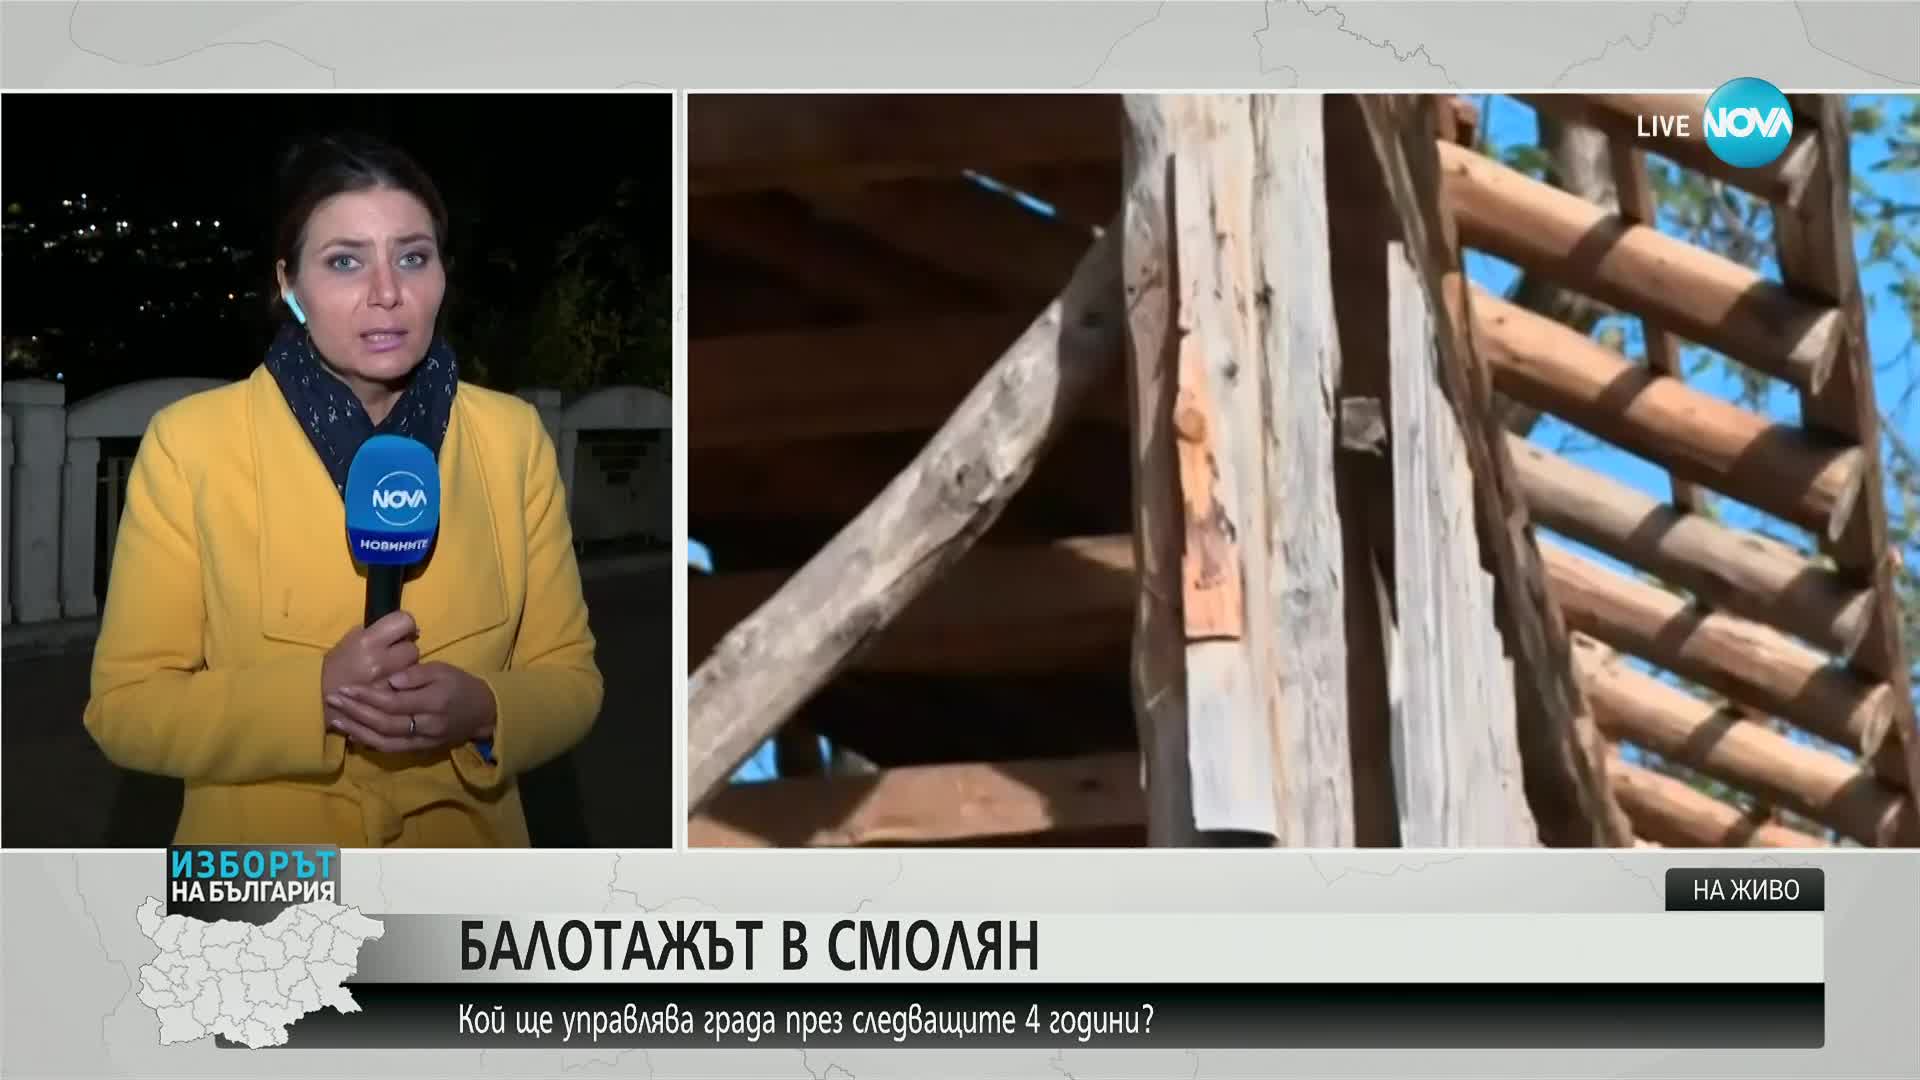 След бурята в Смолянско: Почти всички къщи в село Сивино са с поражения